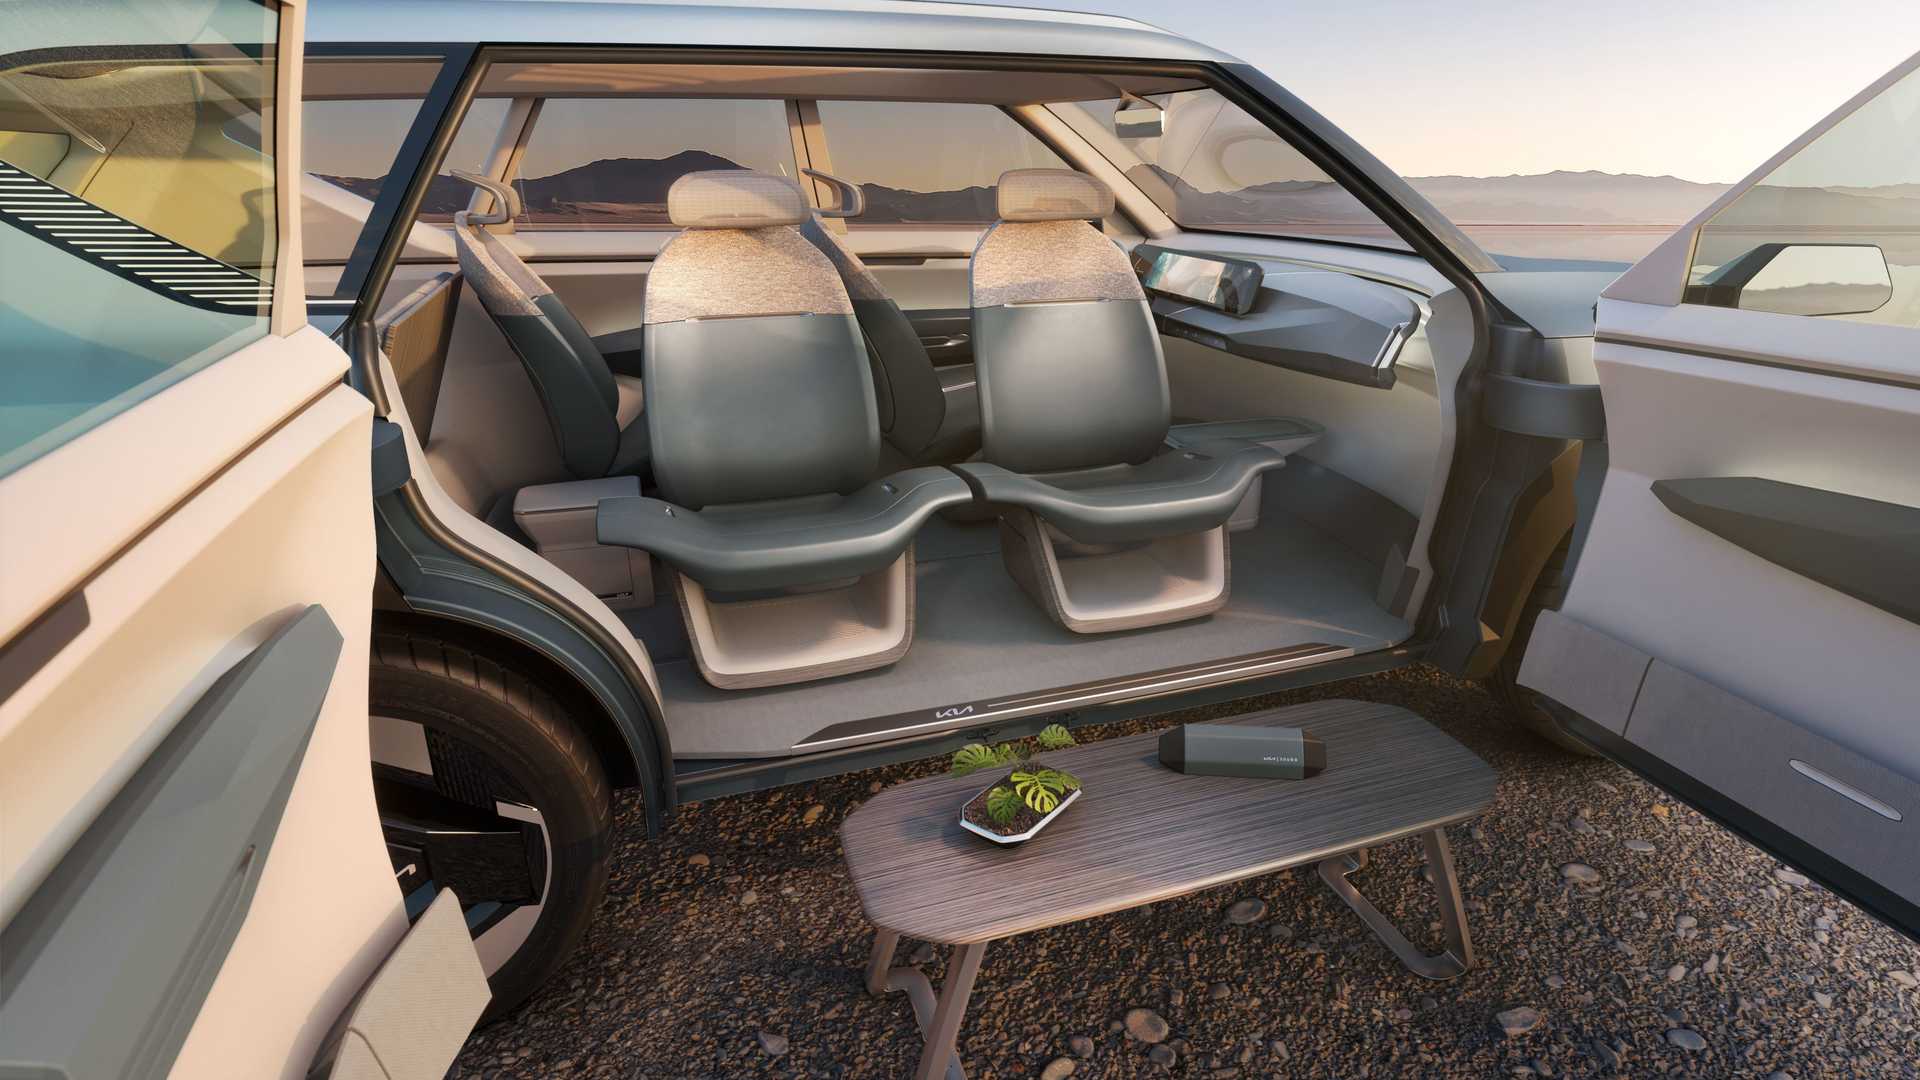 كيا EV5 الجديدة هي أحدث سيارة كهربائية للعلامة بتصميم عضلي وداخلية عصرية 22